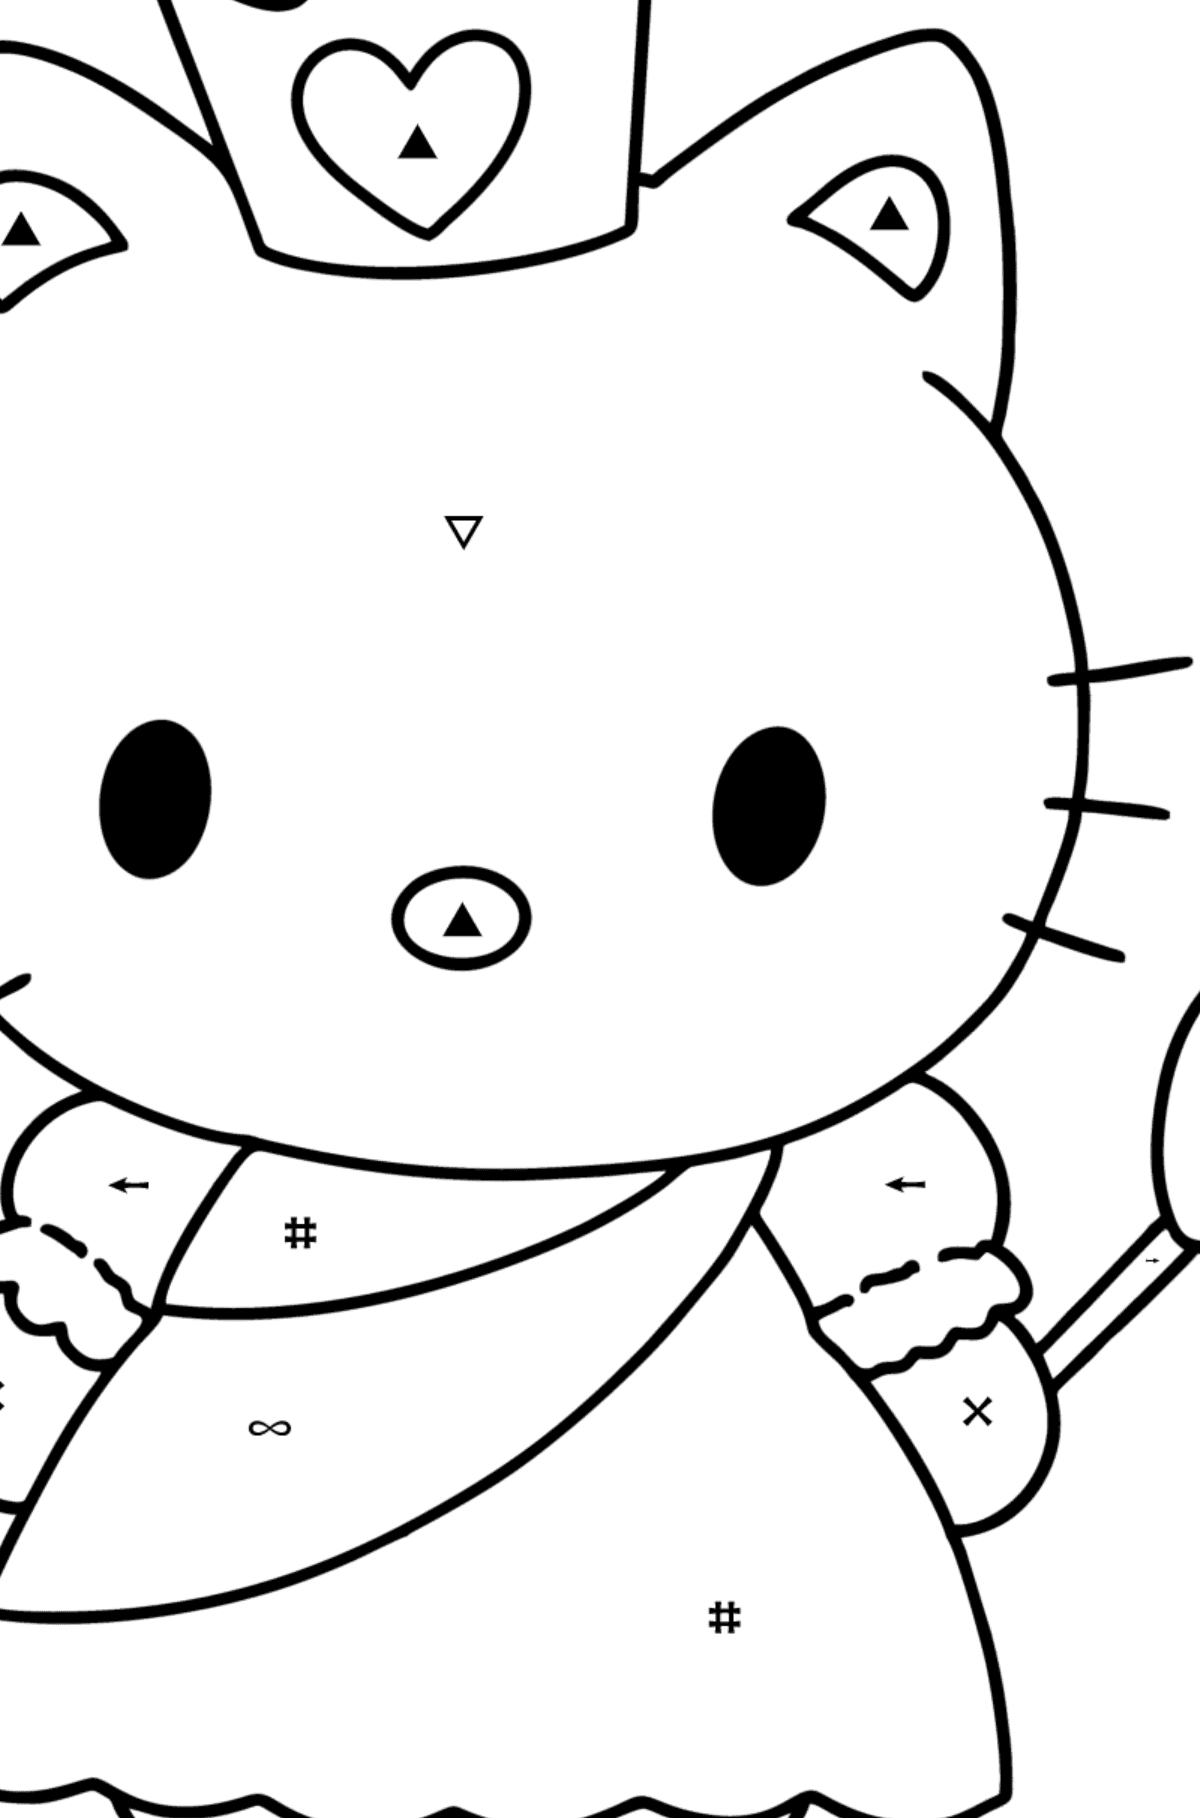 Boyama sayfası Hello Kitty bir prenses - Sembollerle Boyama çocuklar için